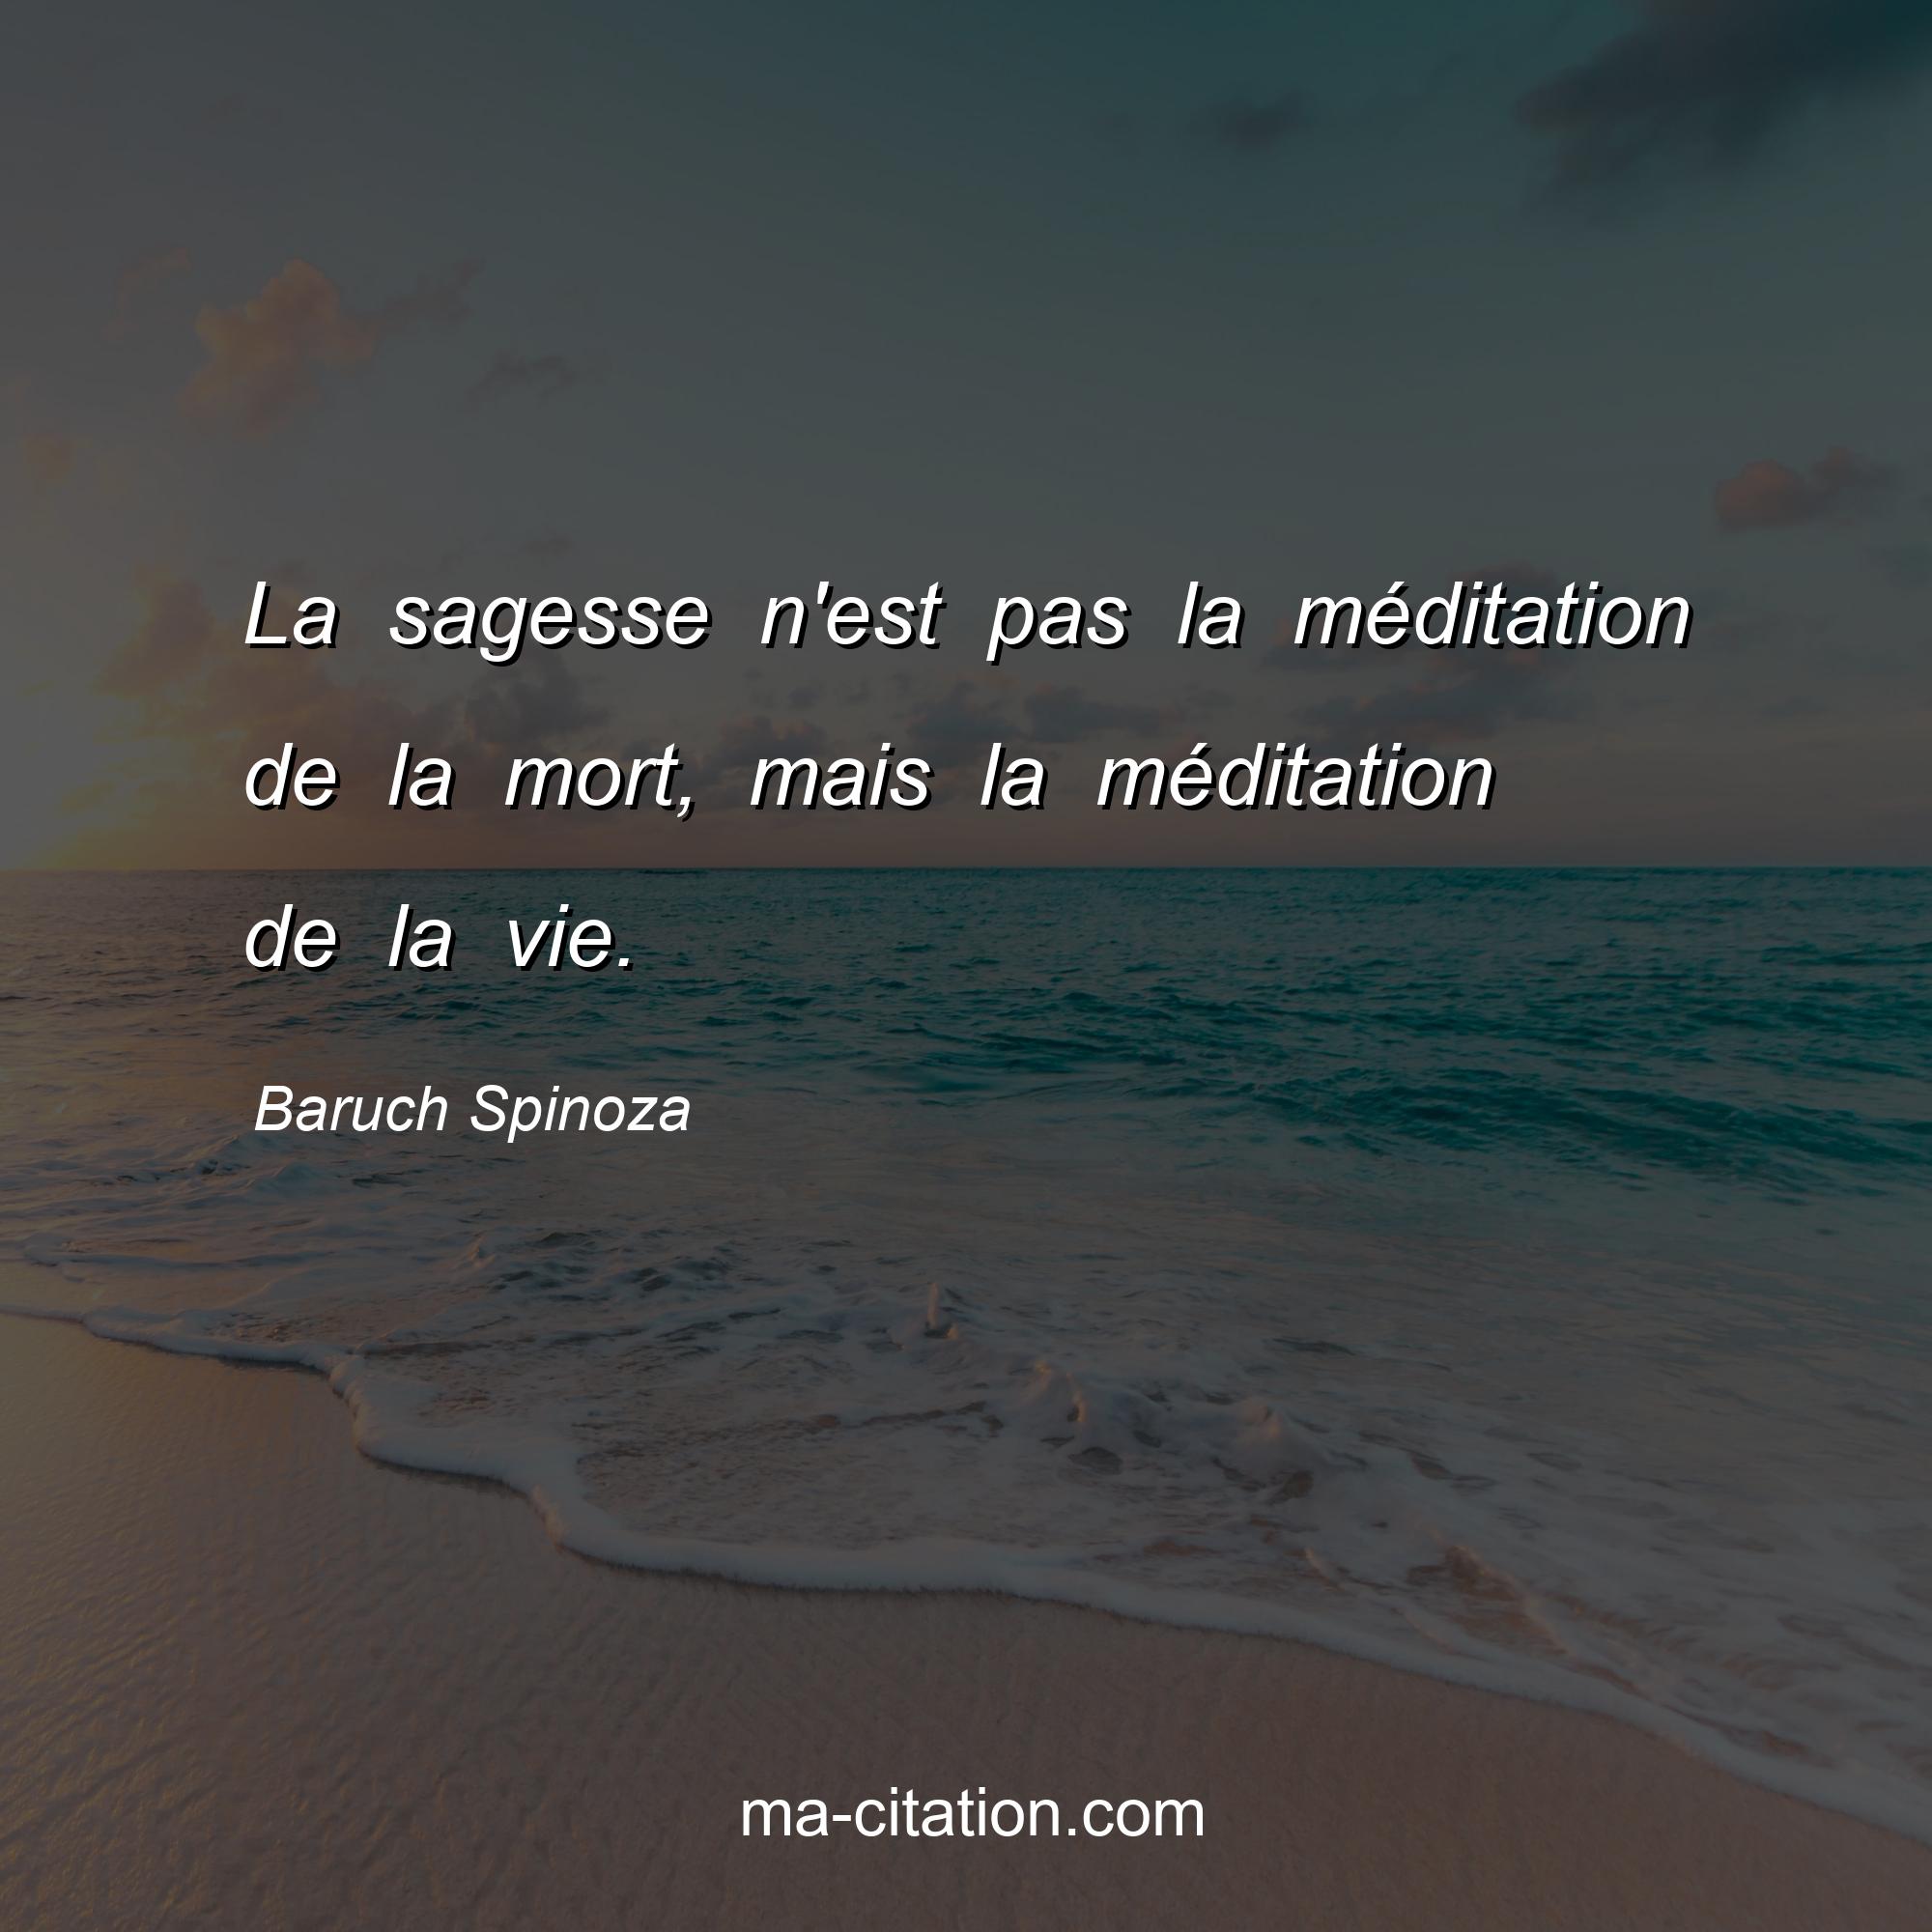 Baruch Spinoza : La sagesse n'est pas la méditation de la mort, mais la méditation de la vie.